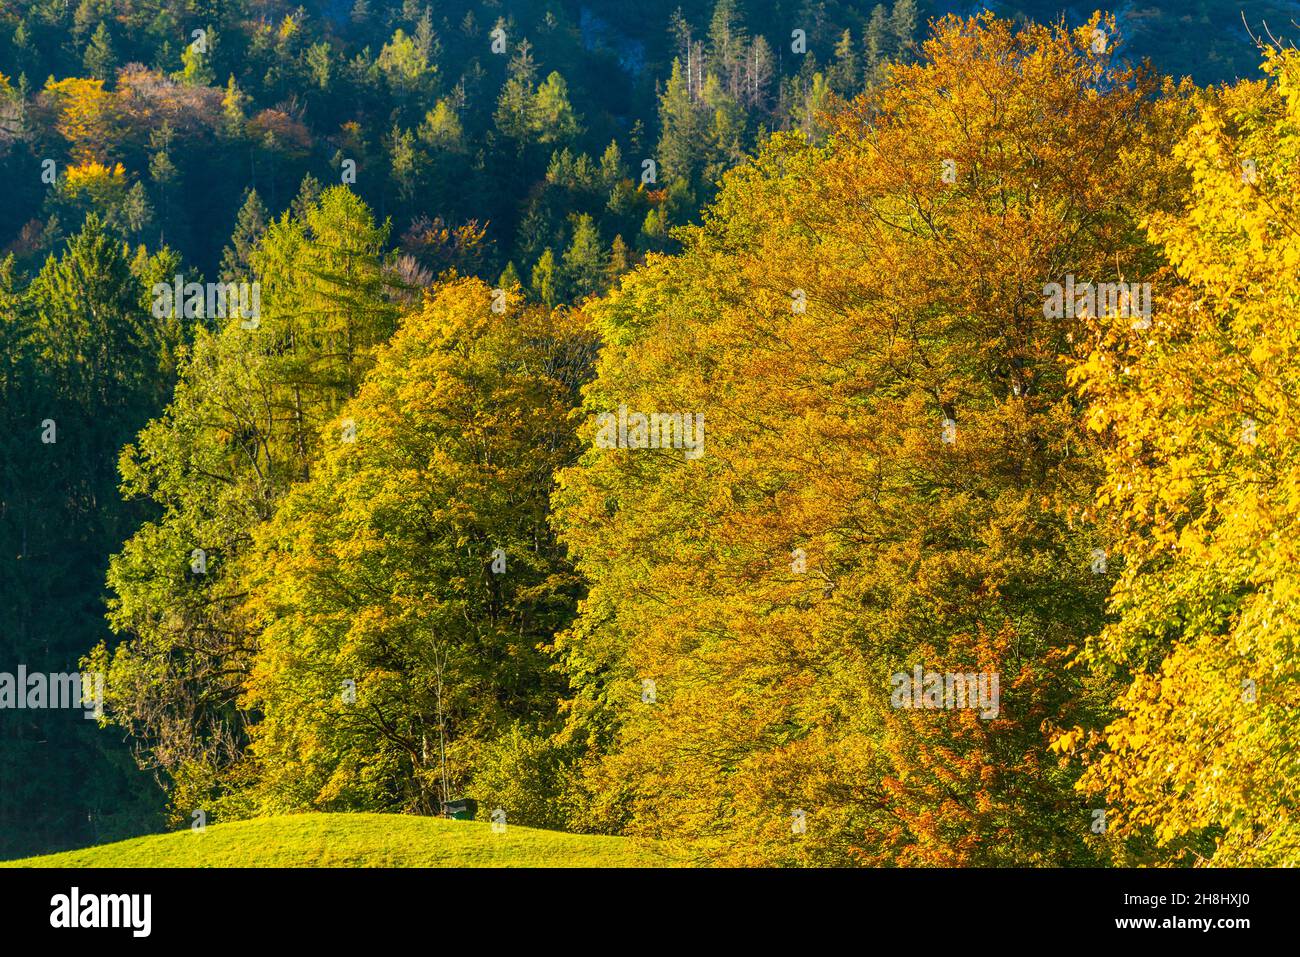 Der Hintersee in den bayerischen Alpen in seinen wunderschönen Herbstfarben, Ramsau bei Berchtesgaden, Oberbayern, Süddeutschland, Europa Stockfoto